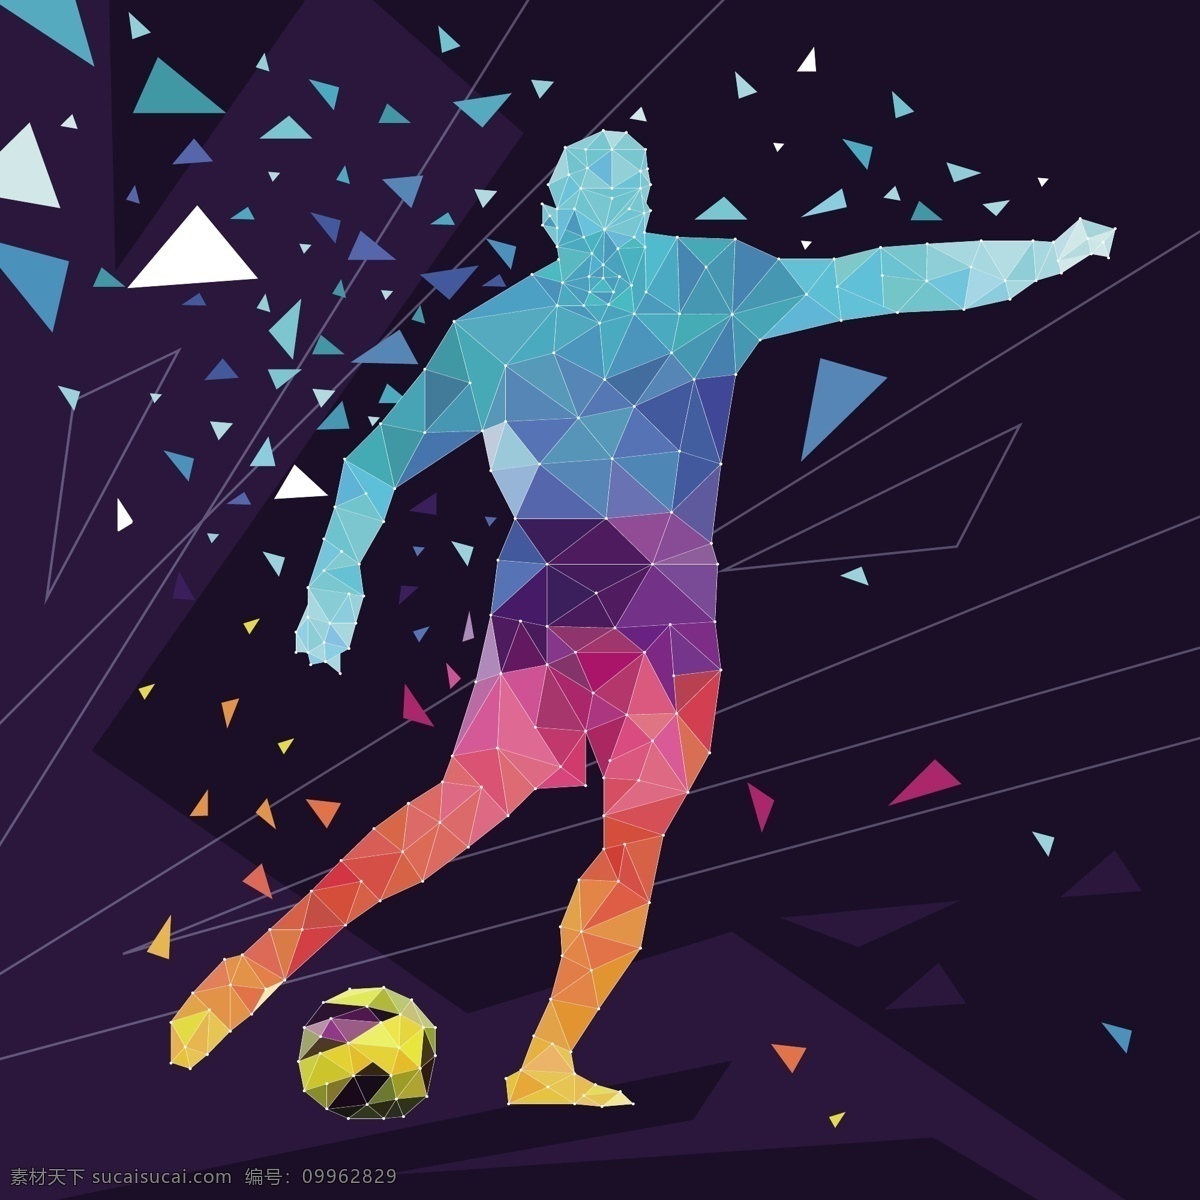 抽象 风格 足球 运动员 背景 世界杯 矢量素材 卡通 彩色 三角形 俄罗斯 欧洲杯 比赛 体育 竞赛